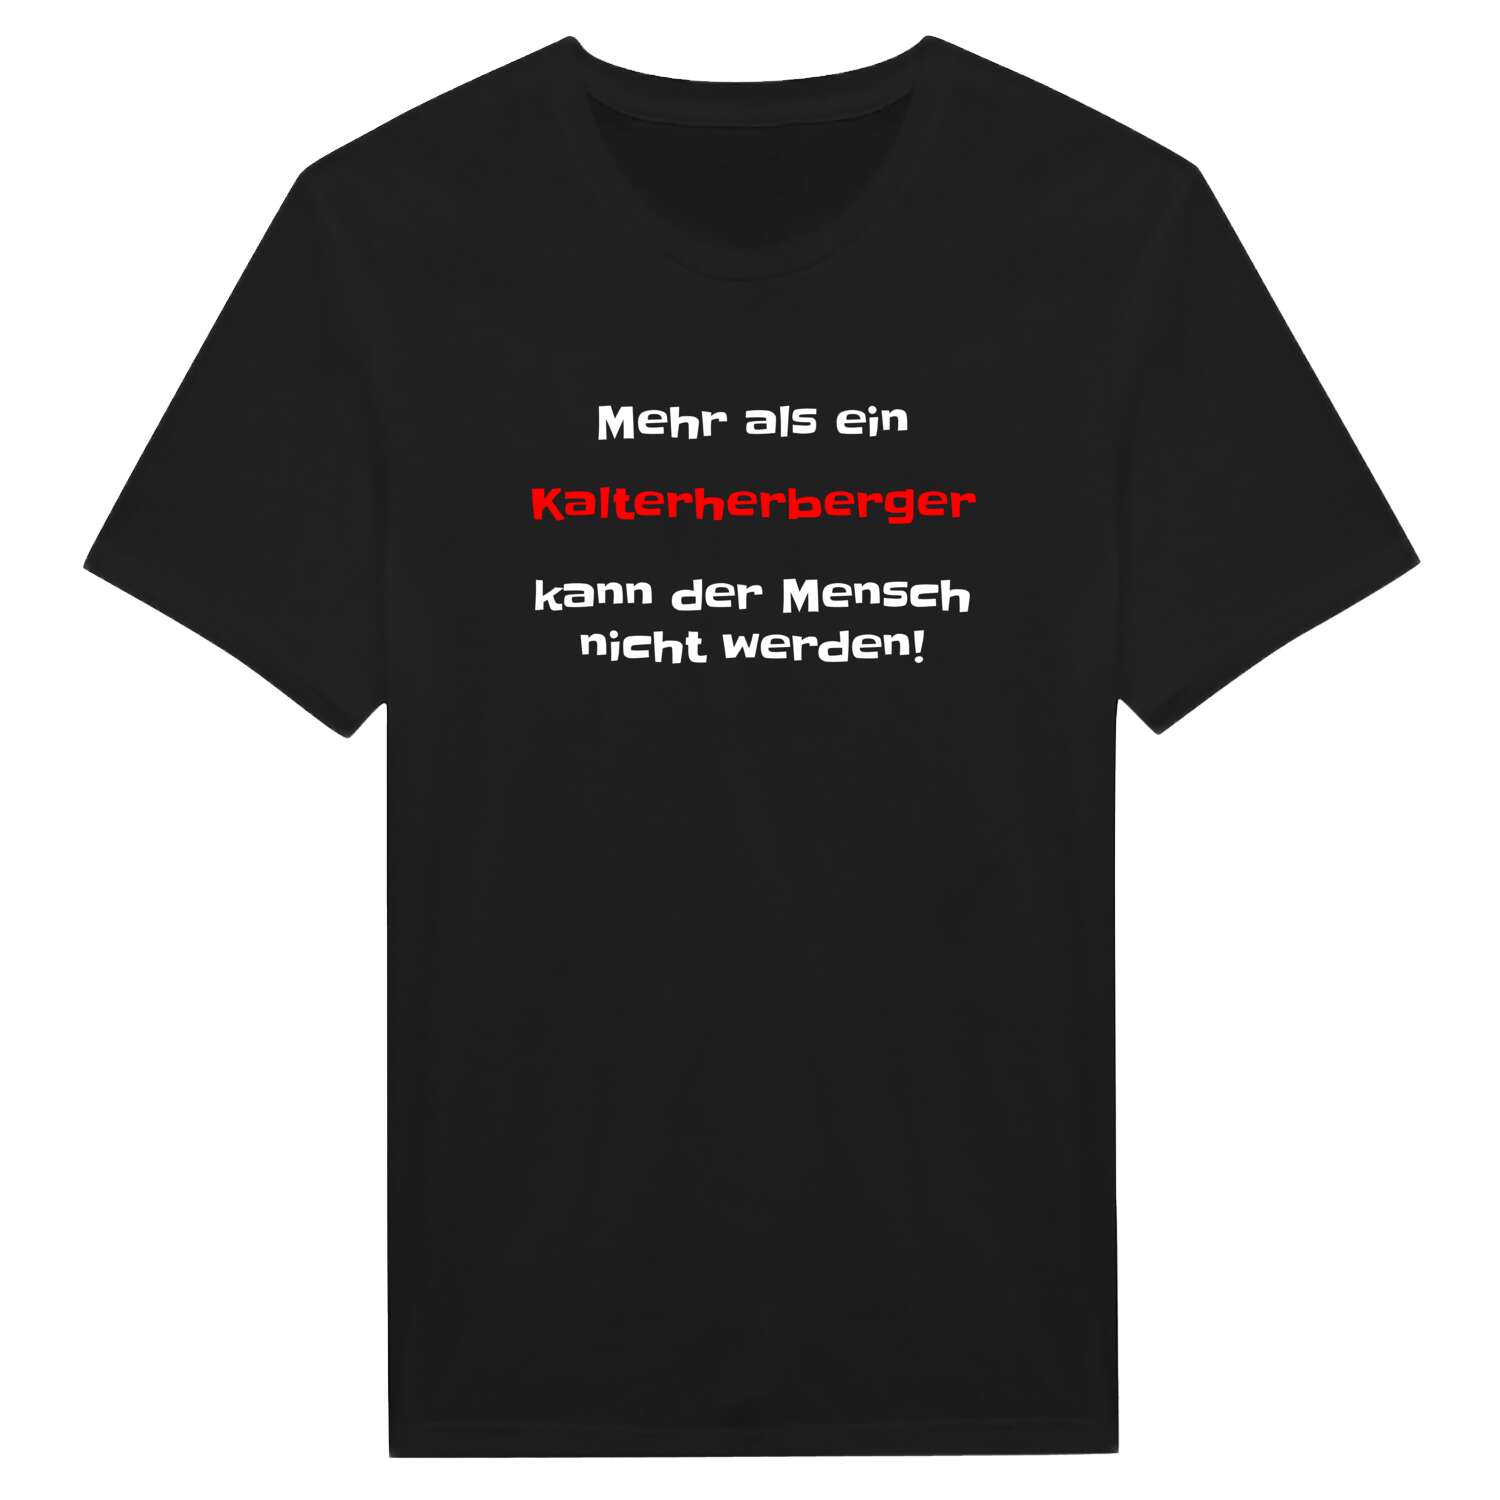 Kalterherberg T-Shirt »Mehr als ein«